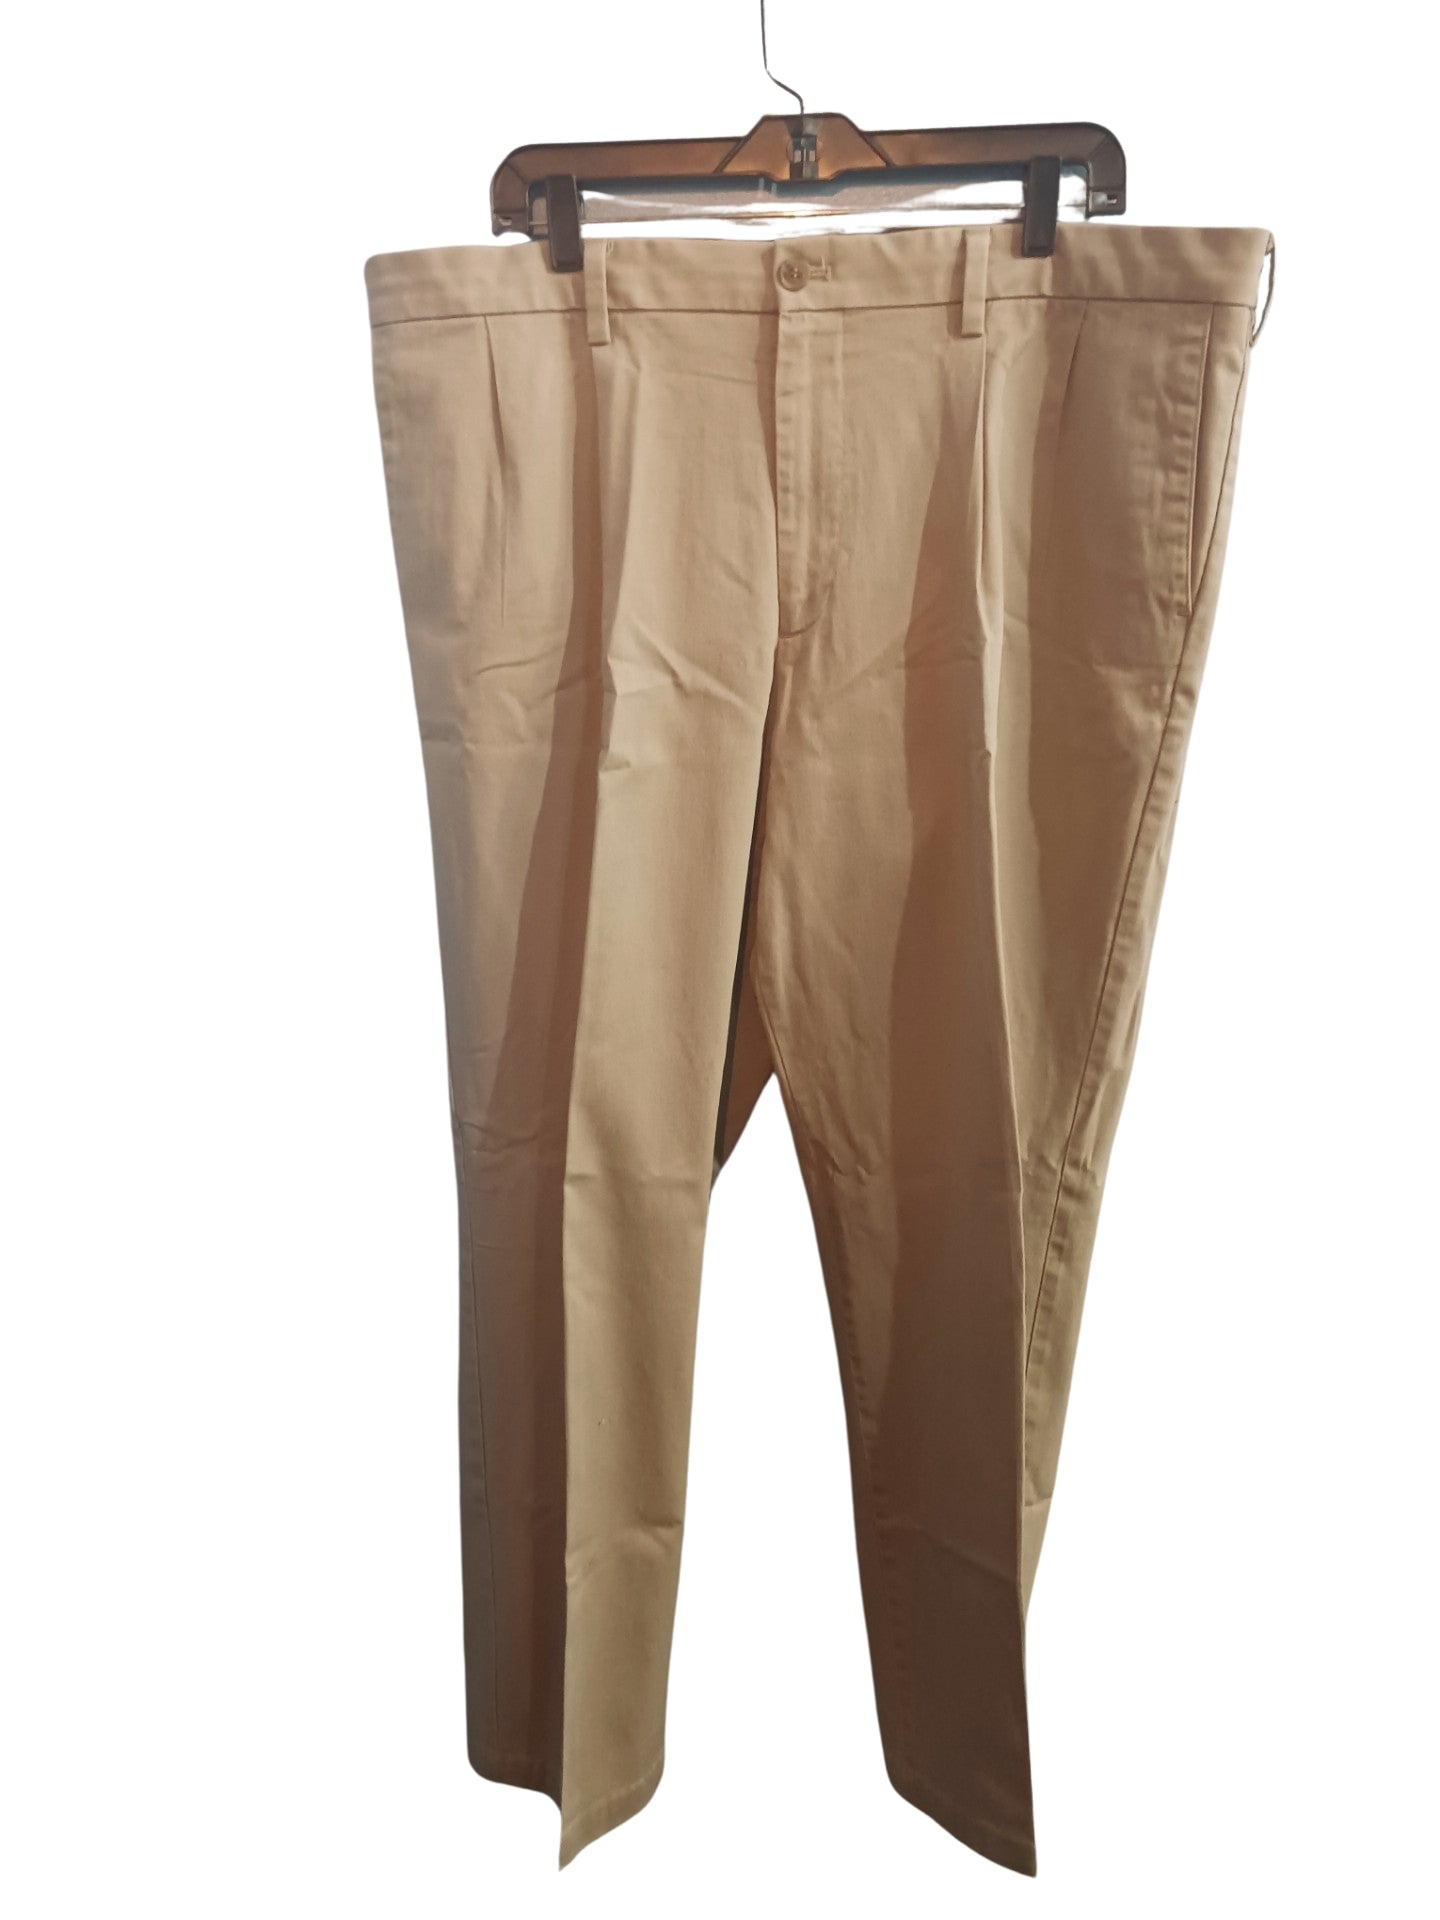 Dockers Classic Pleated Khaki Pants, Tan, Size 40×32